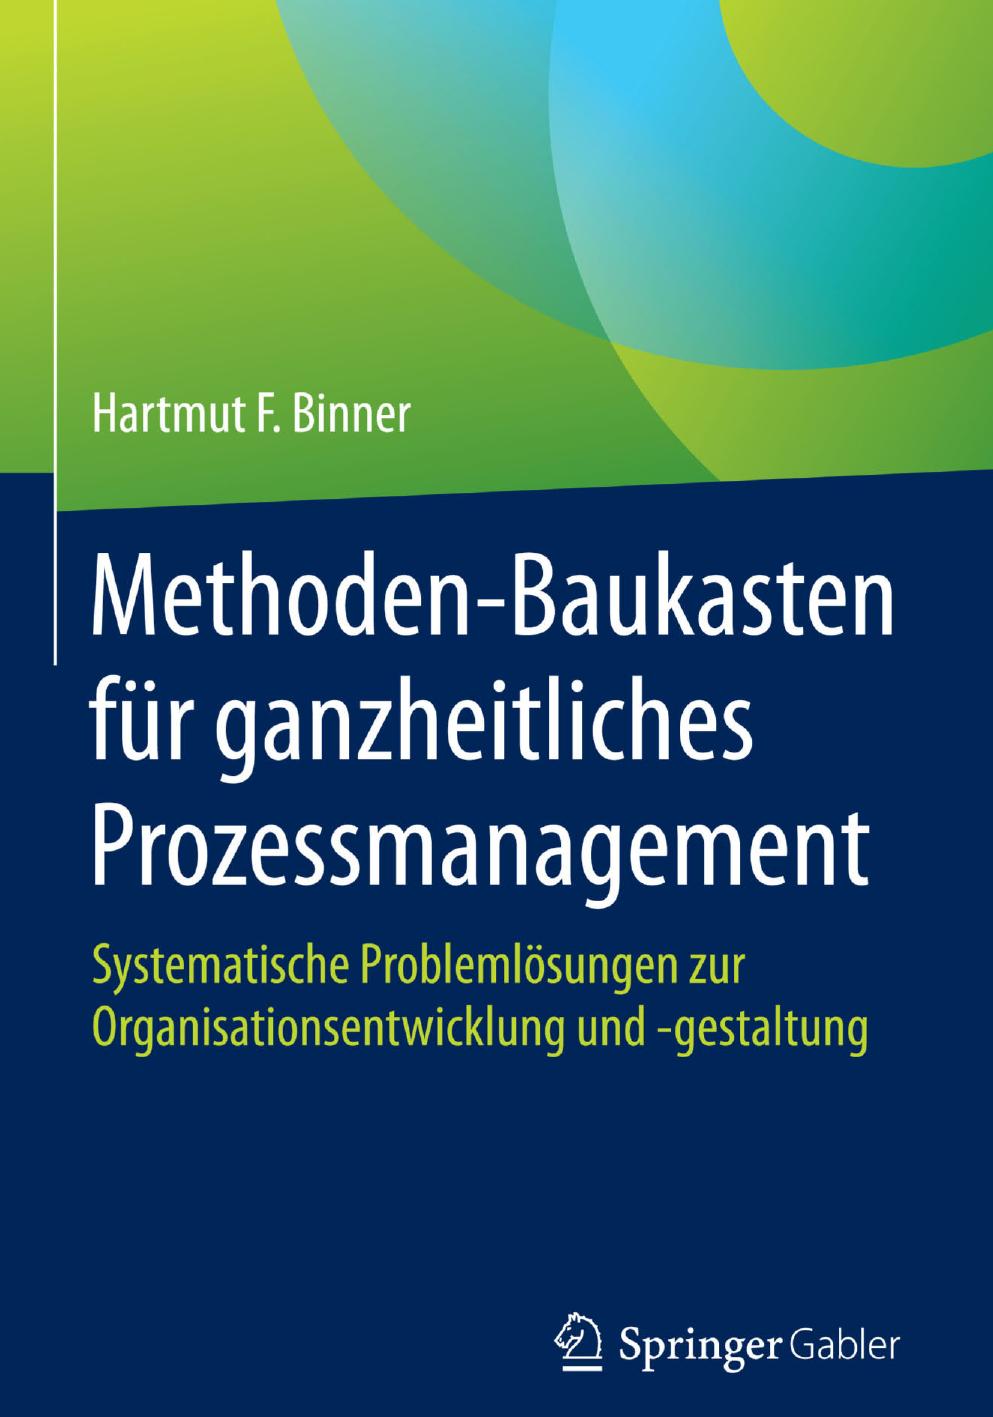 Methoden-Baukasten für ganzheitliches Prozessmanagement: Systematische Problemlösungen zur Organisationsentwicklung und -gestaltung